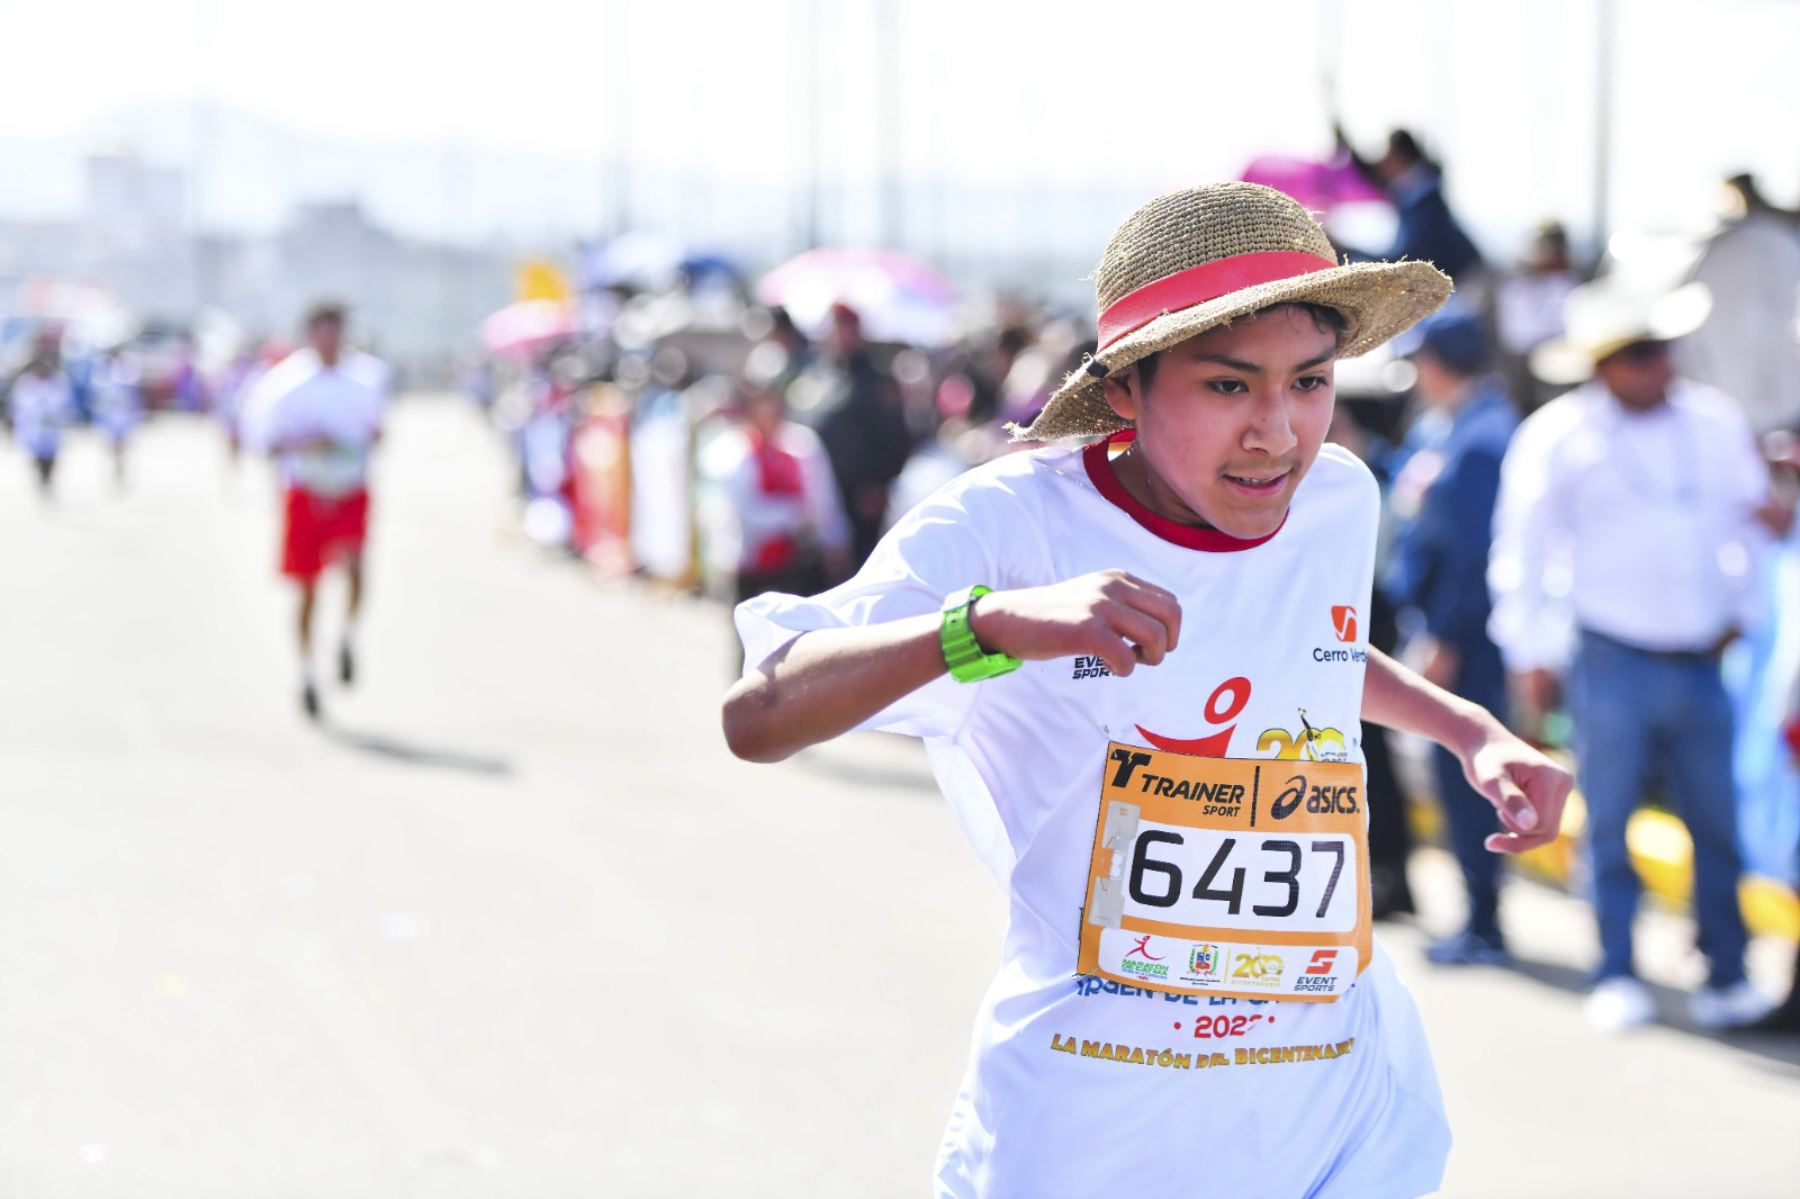 La competencia comenzó a las 08:00 horas en el distrito de Cayma con los recorridos de 42 km, 21 km, 10 km y 5 km en 18 categorías de 10 años de edad a más de 80 años.
Foto: ANDINA/ Cortesía Diego Ramos